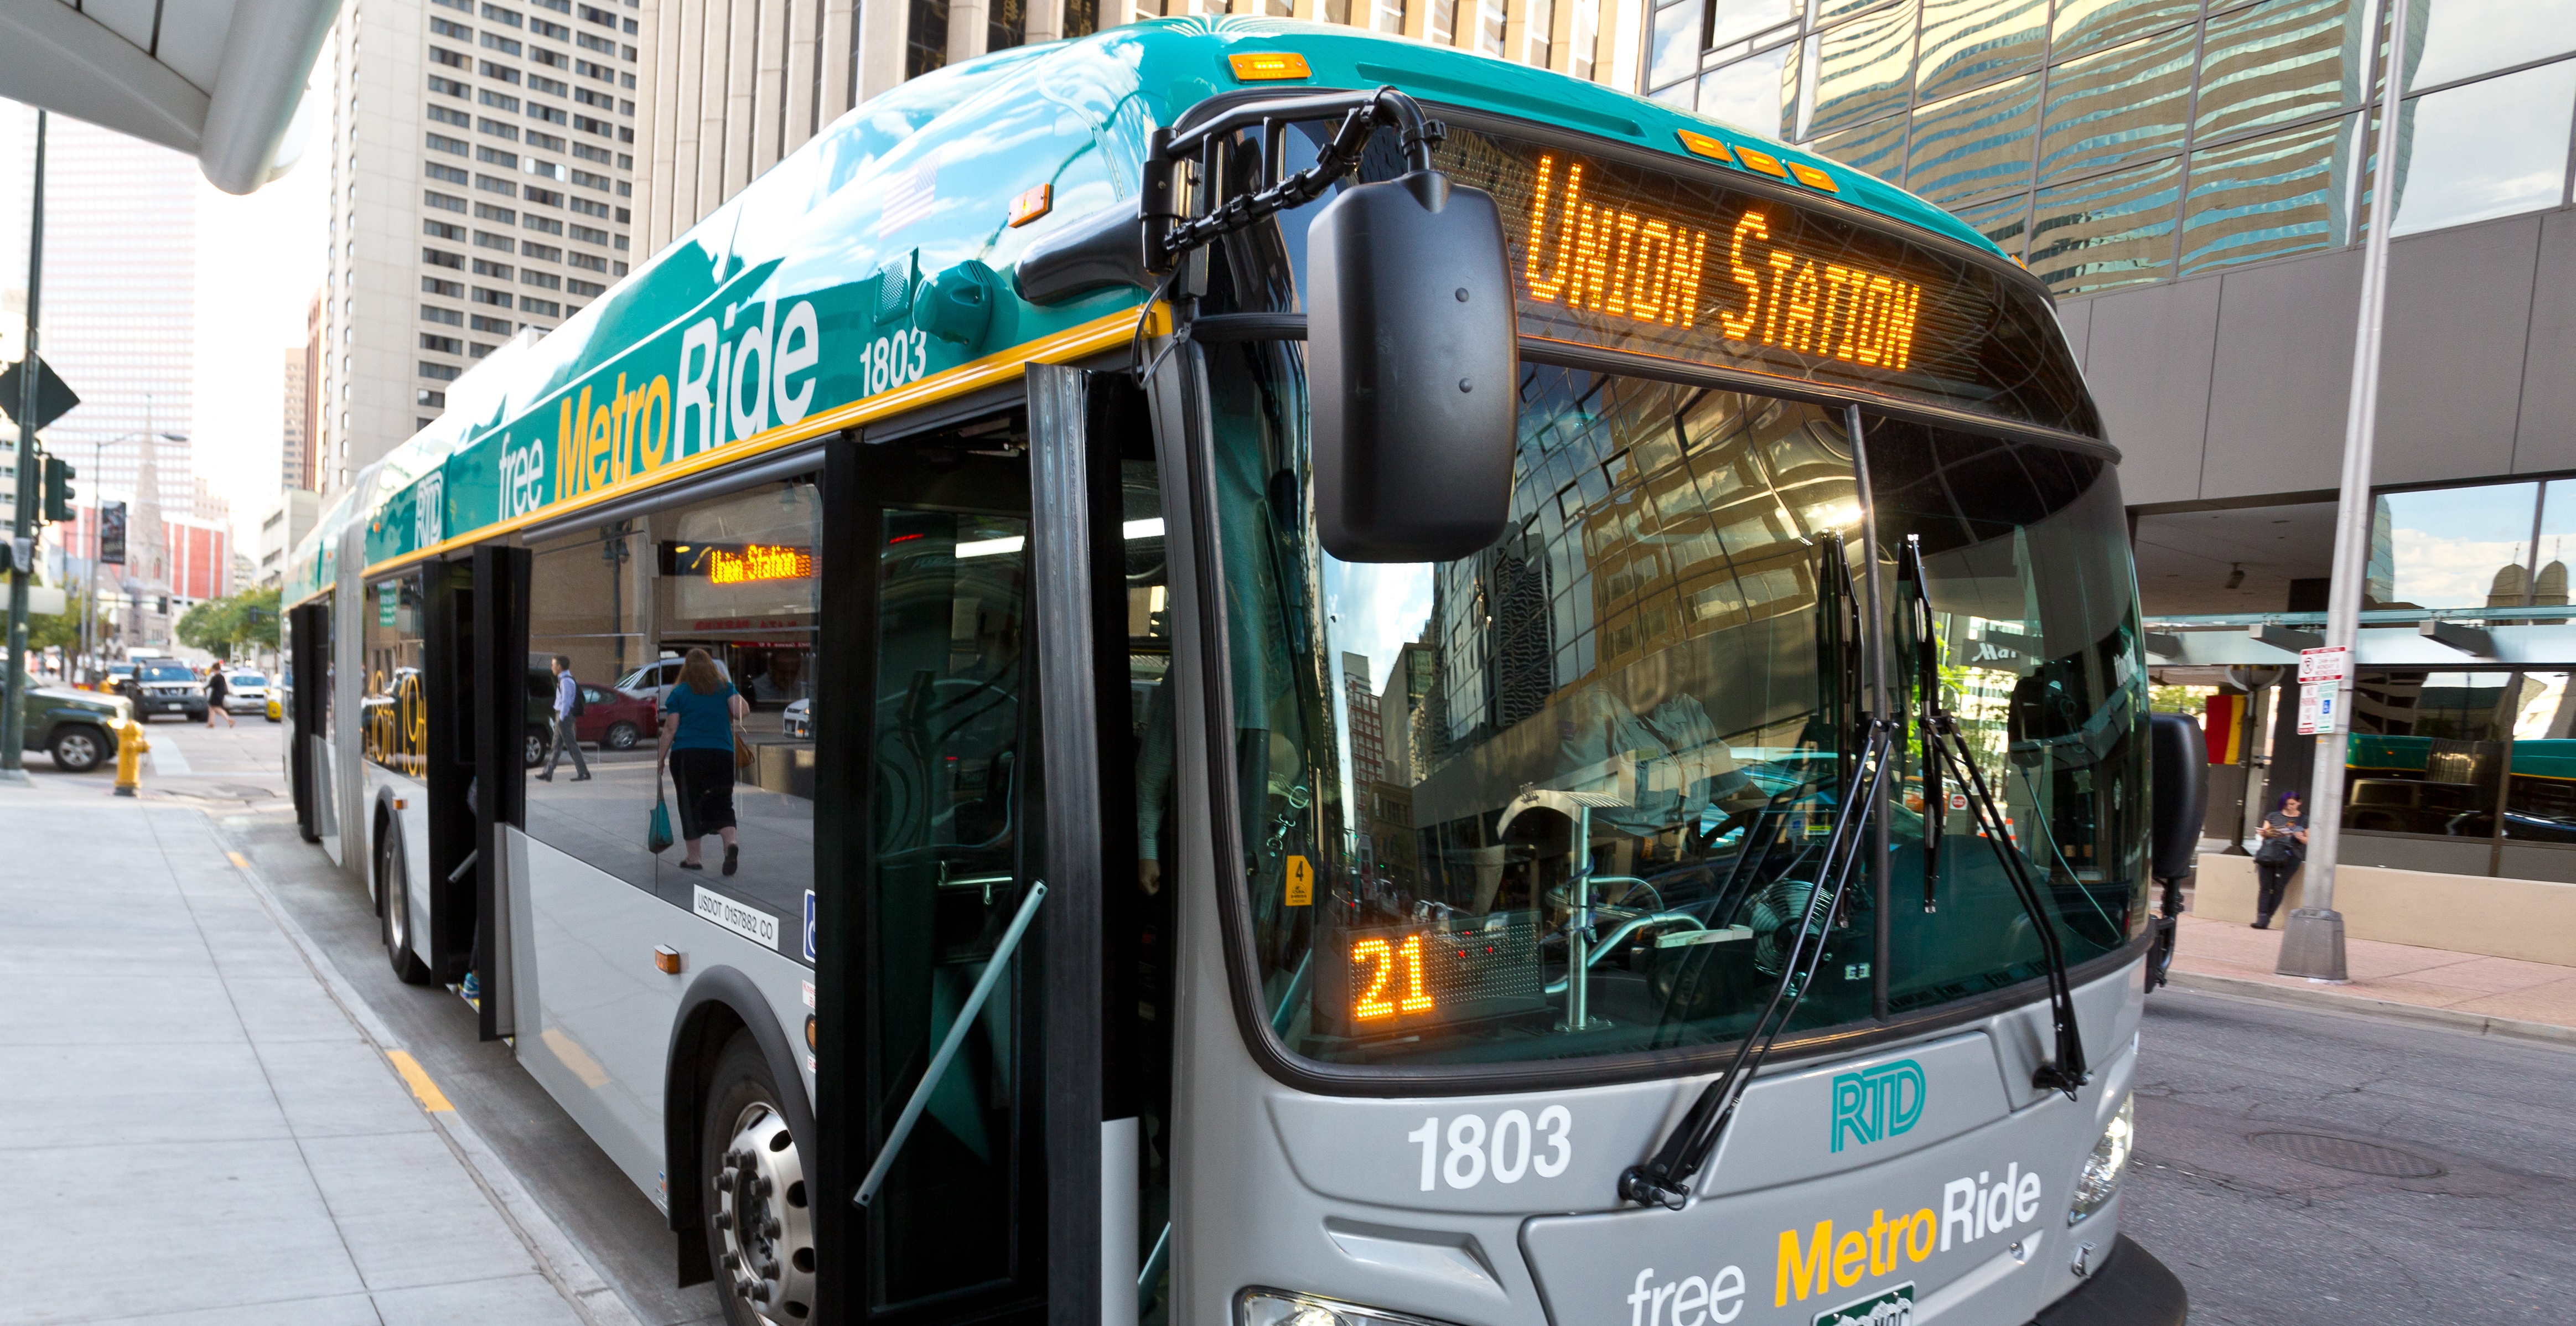 Photo of a free MetroRide bus